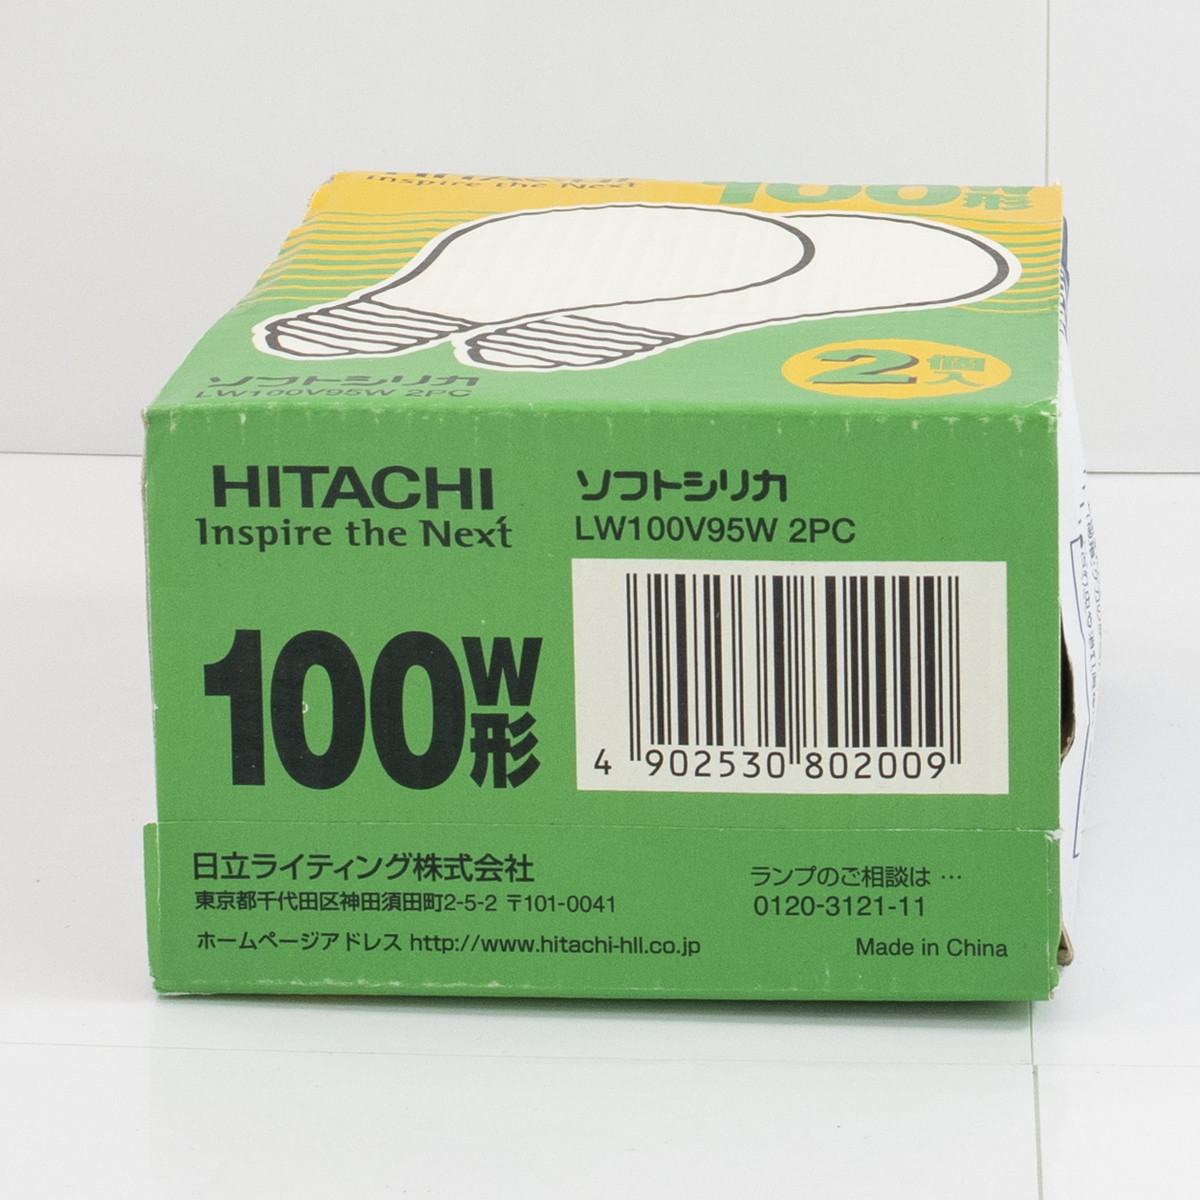  Hitachi soft silica 100W shape 2 piece insertion LW100V95W-2PC